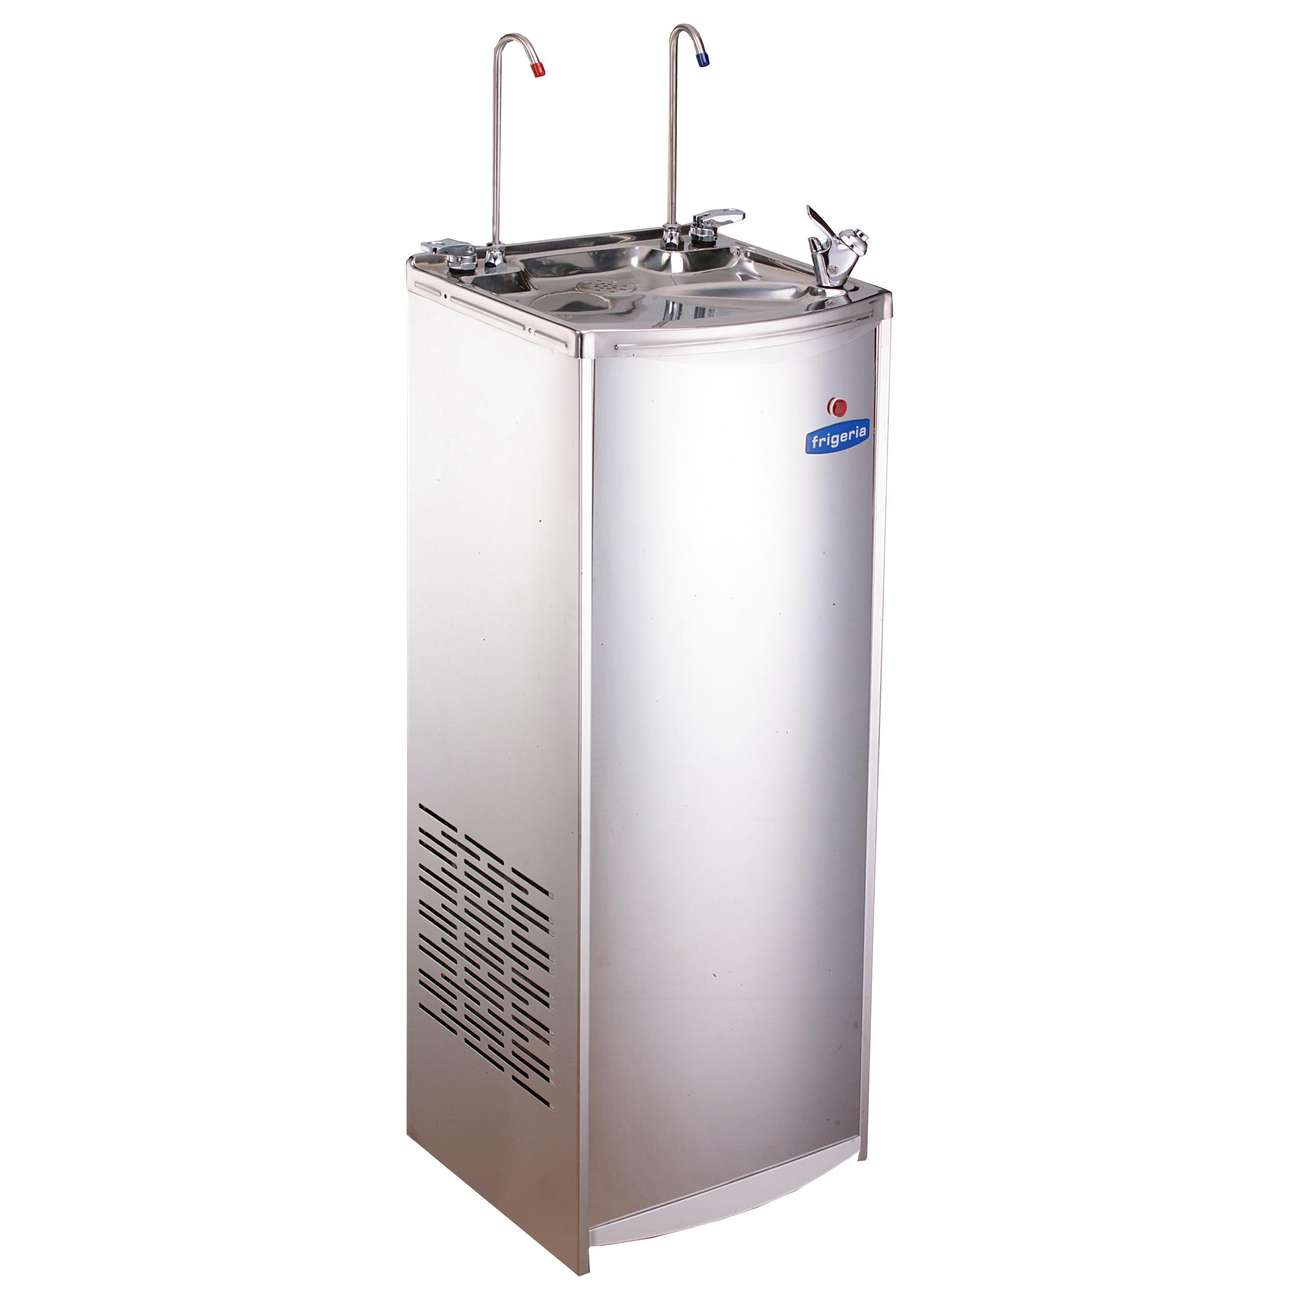 偉志牌Frigeria 不透鋼飲水機(冷熱雙溫) | 中時發展有限公司